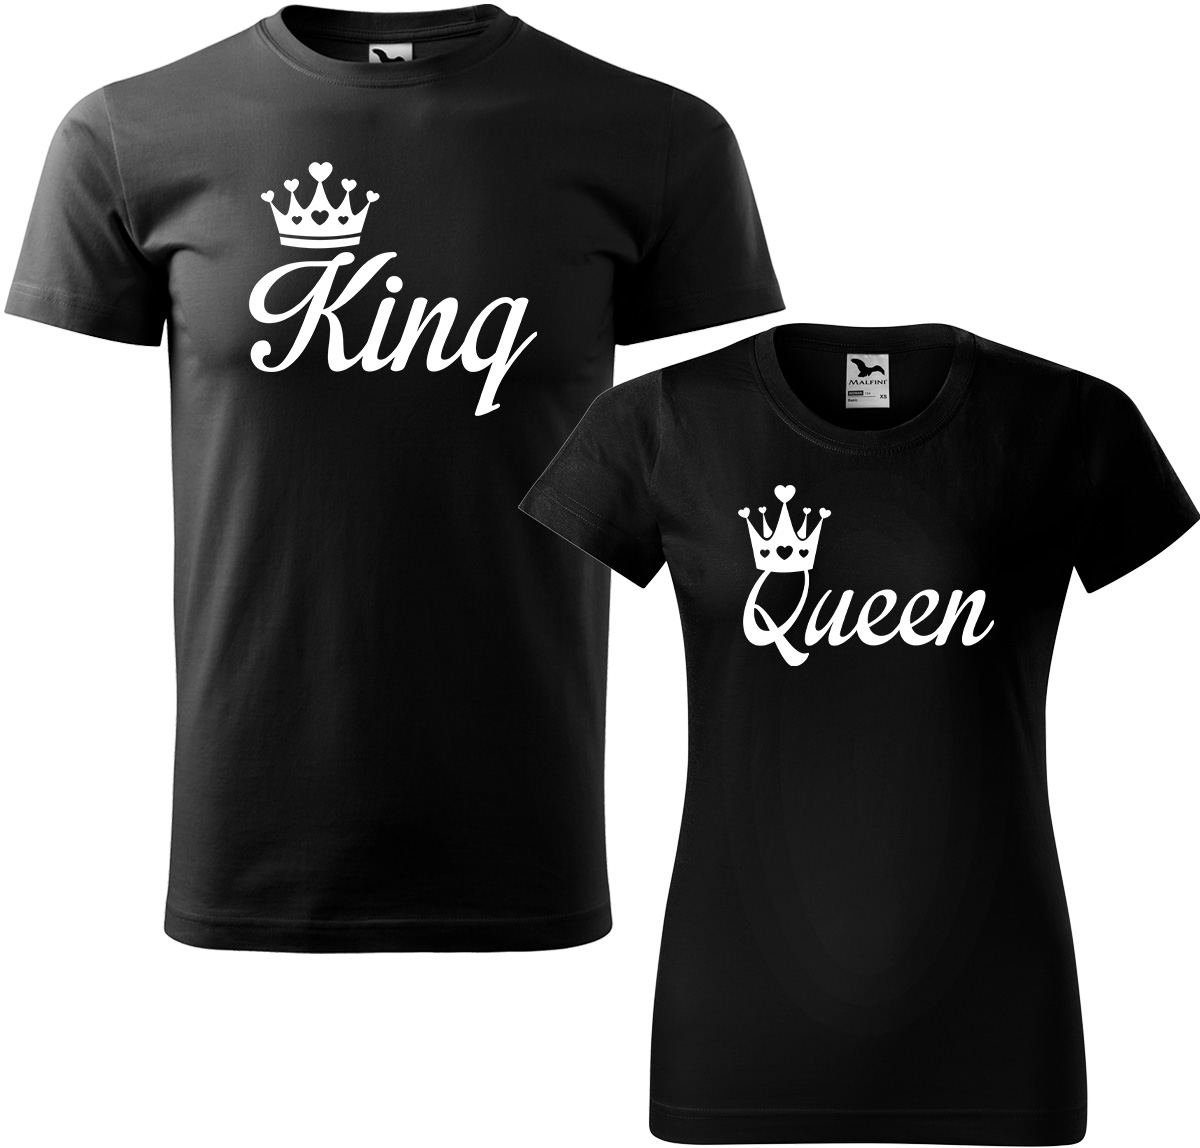 Trička pro páry - King a queen Barva: Černá (01), Velikost dámské tričko: S, Velikost pánské tričko: M